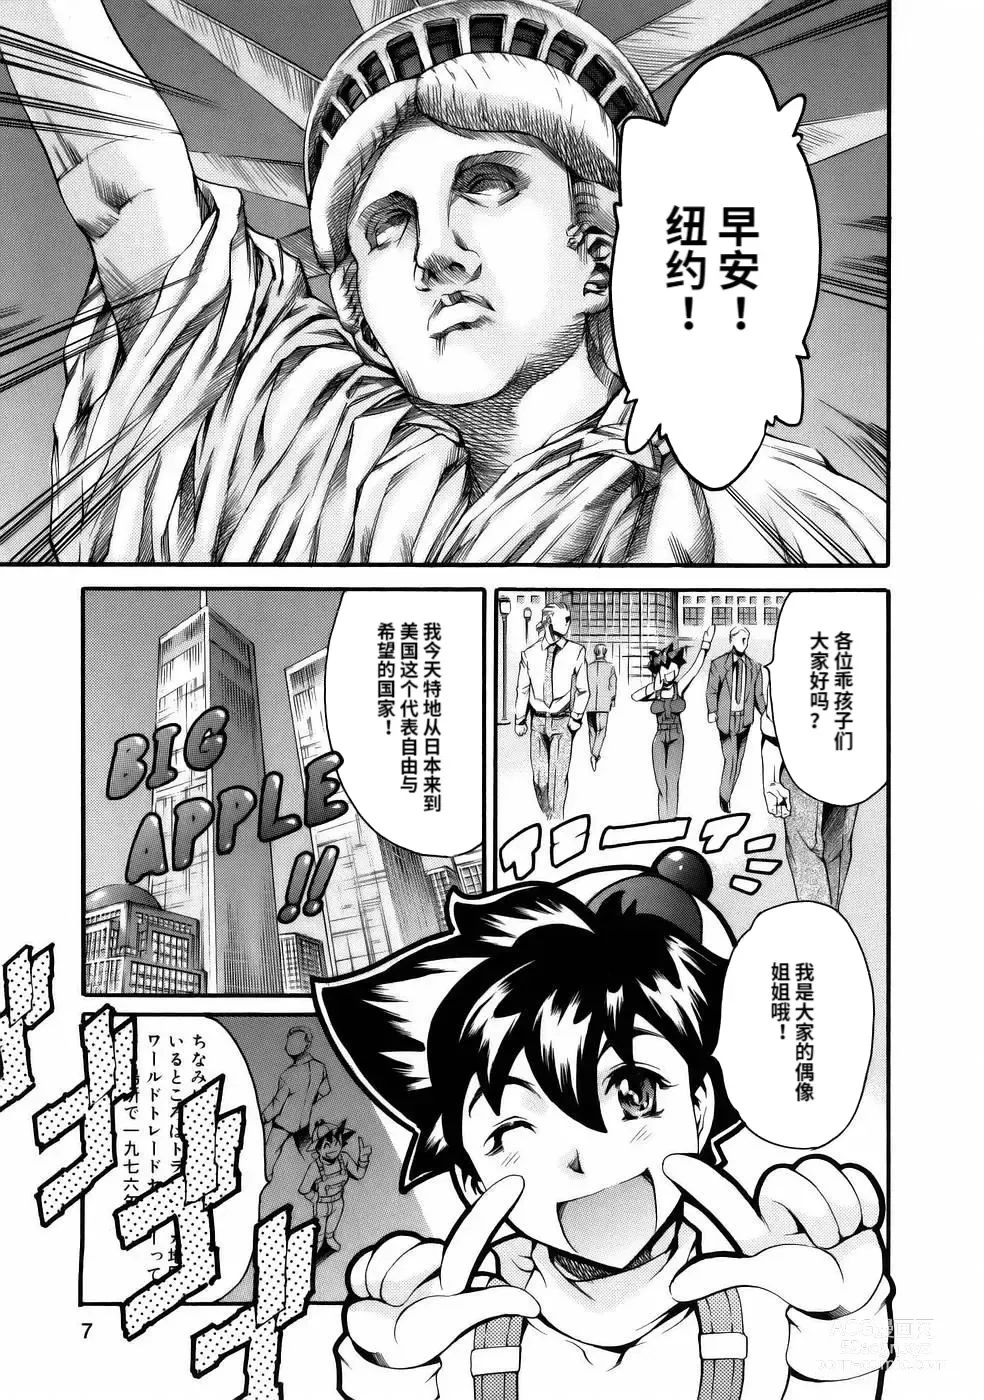 Page 9 of manga Manga Naze Nani Kyoushitsu